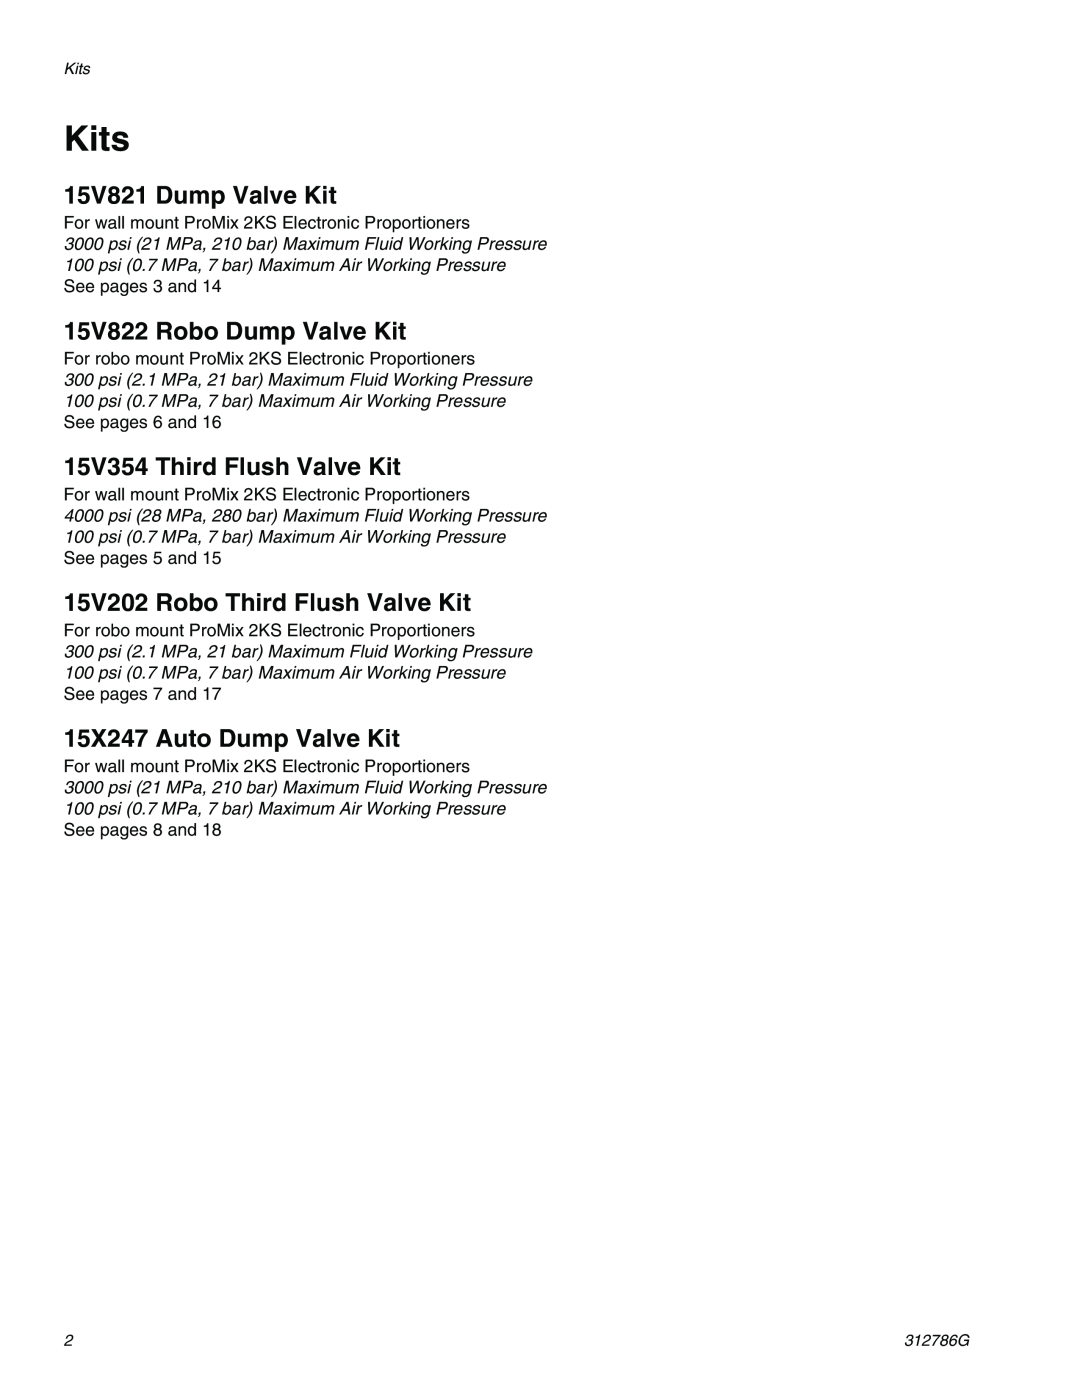 Graco TI12954a, TI12743a Kits, 15V821 Dump Valve Kit, 15V822 Robo Dump Valve Kit, 15V354 Third Flush Valve Kit 